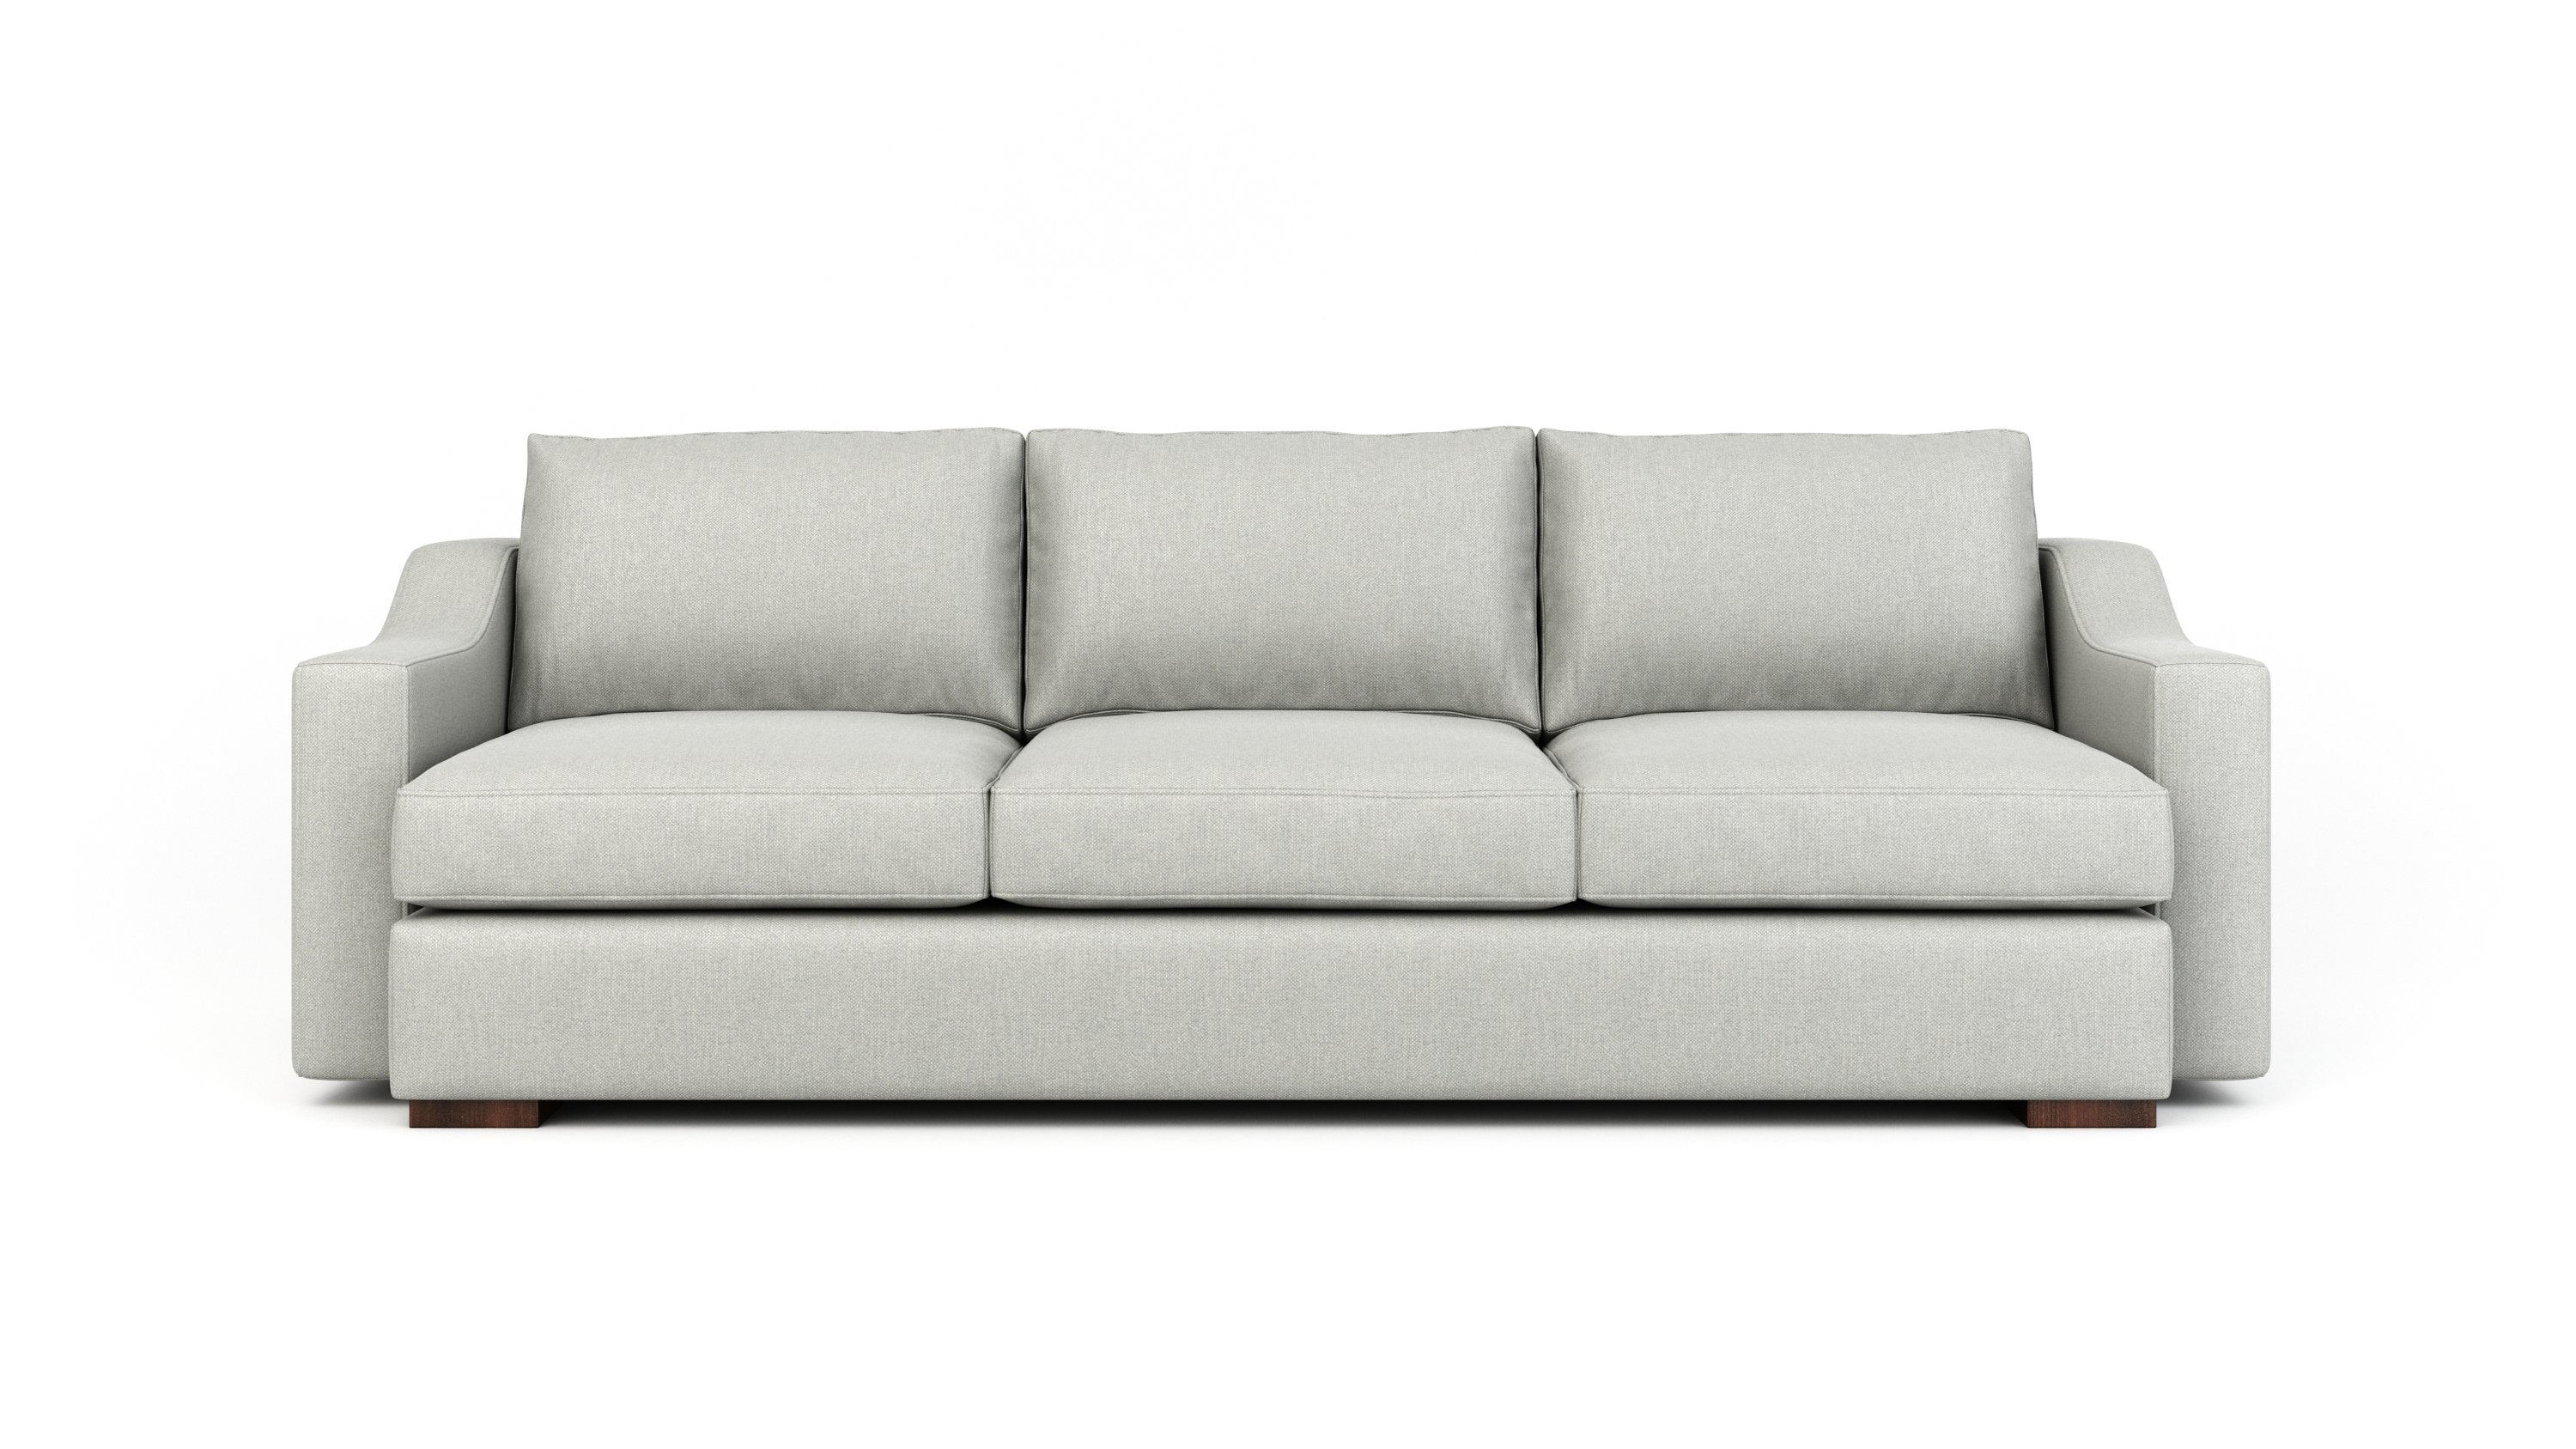 classic sofa designs